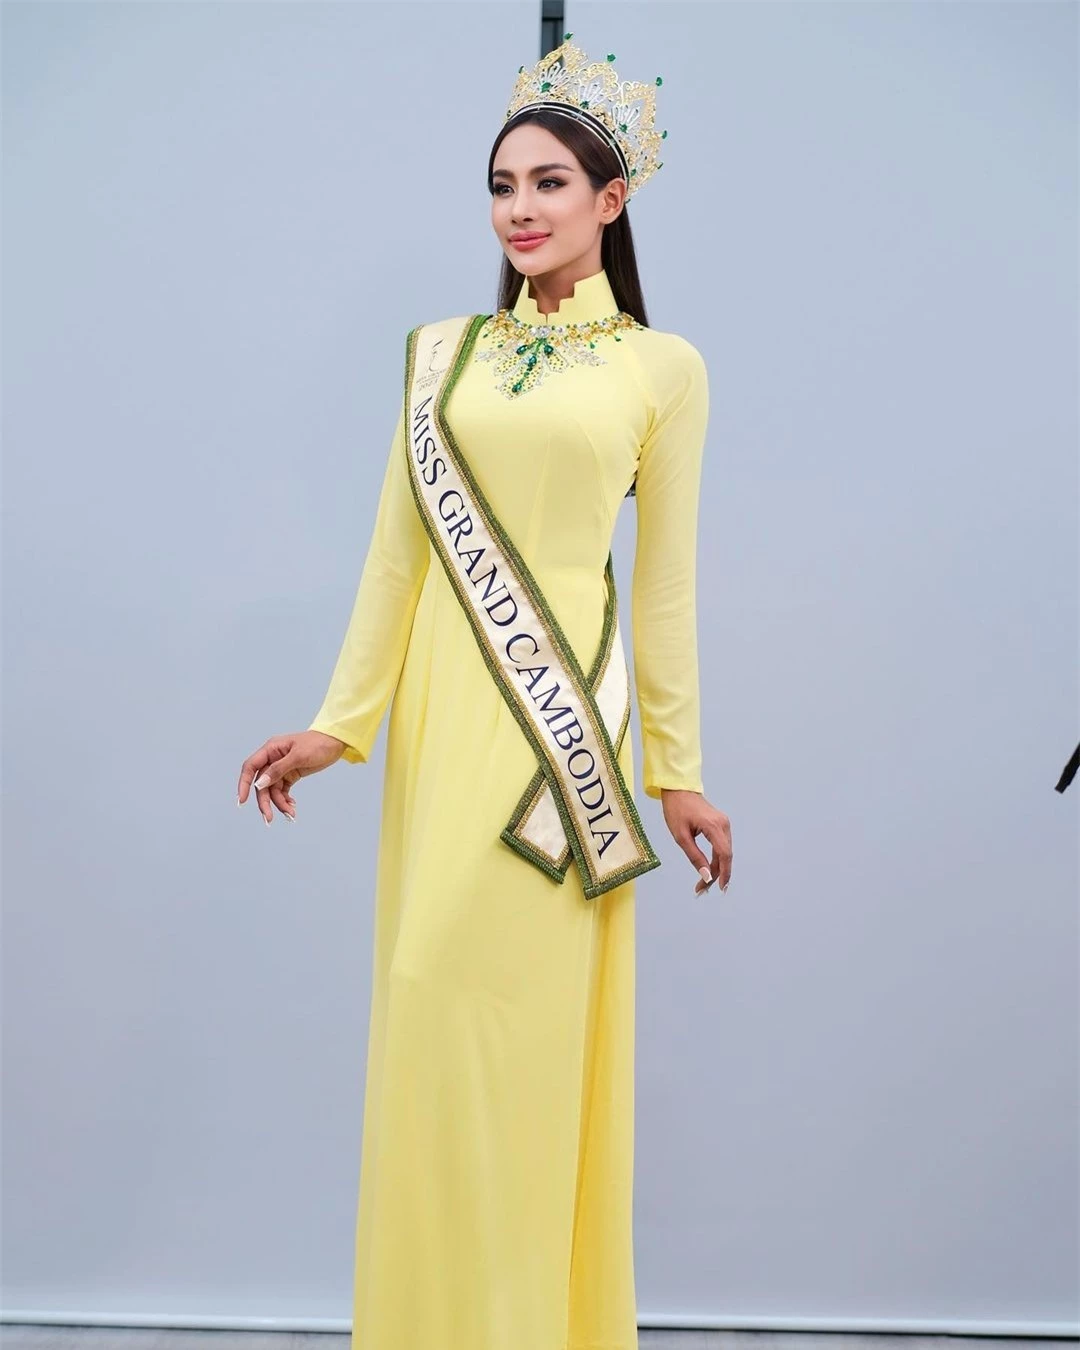 Hoa hậu Hòa bình Campuchia mặc áo dài, nói tiếng Việt ảnh 4